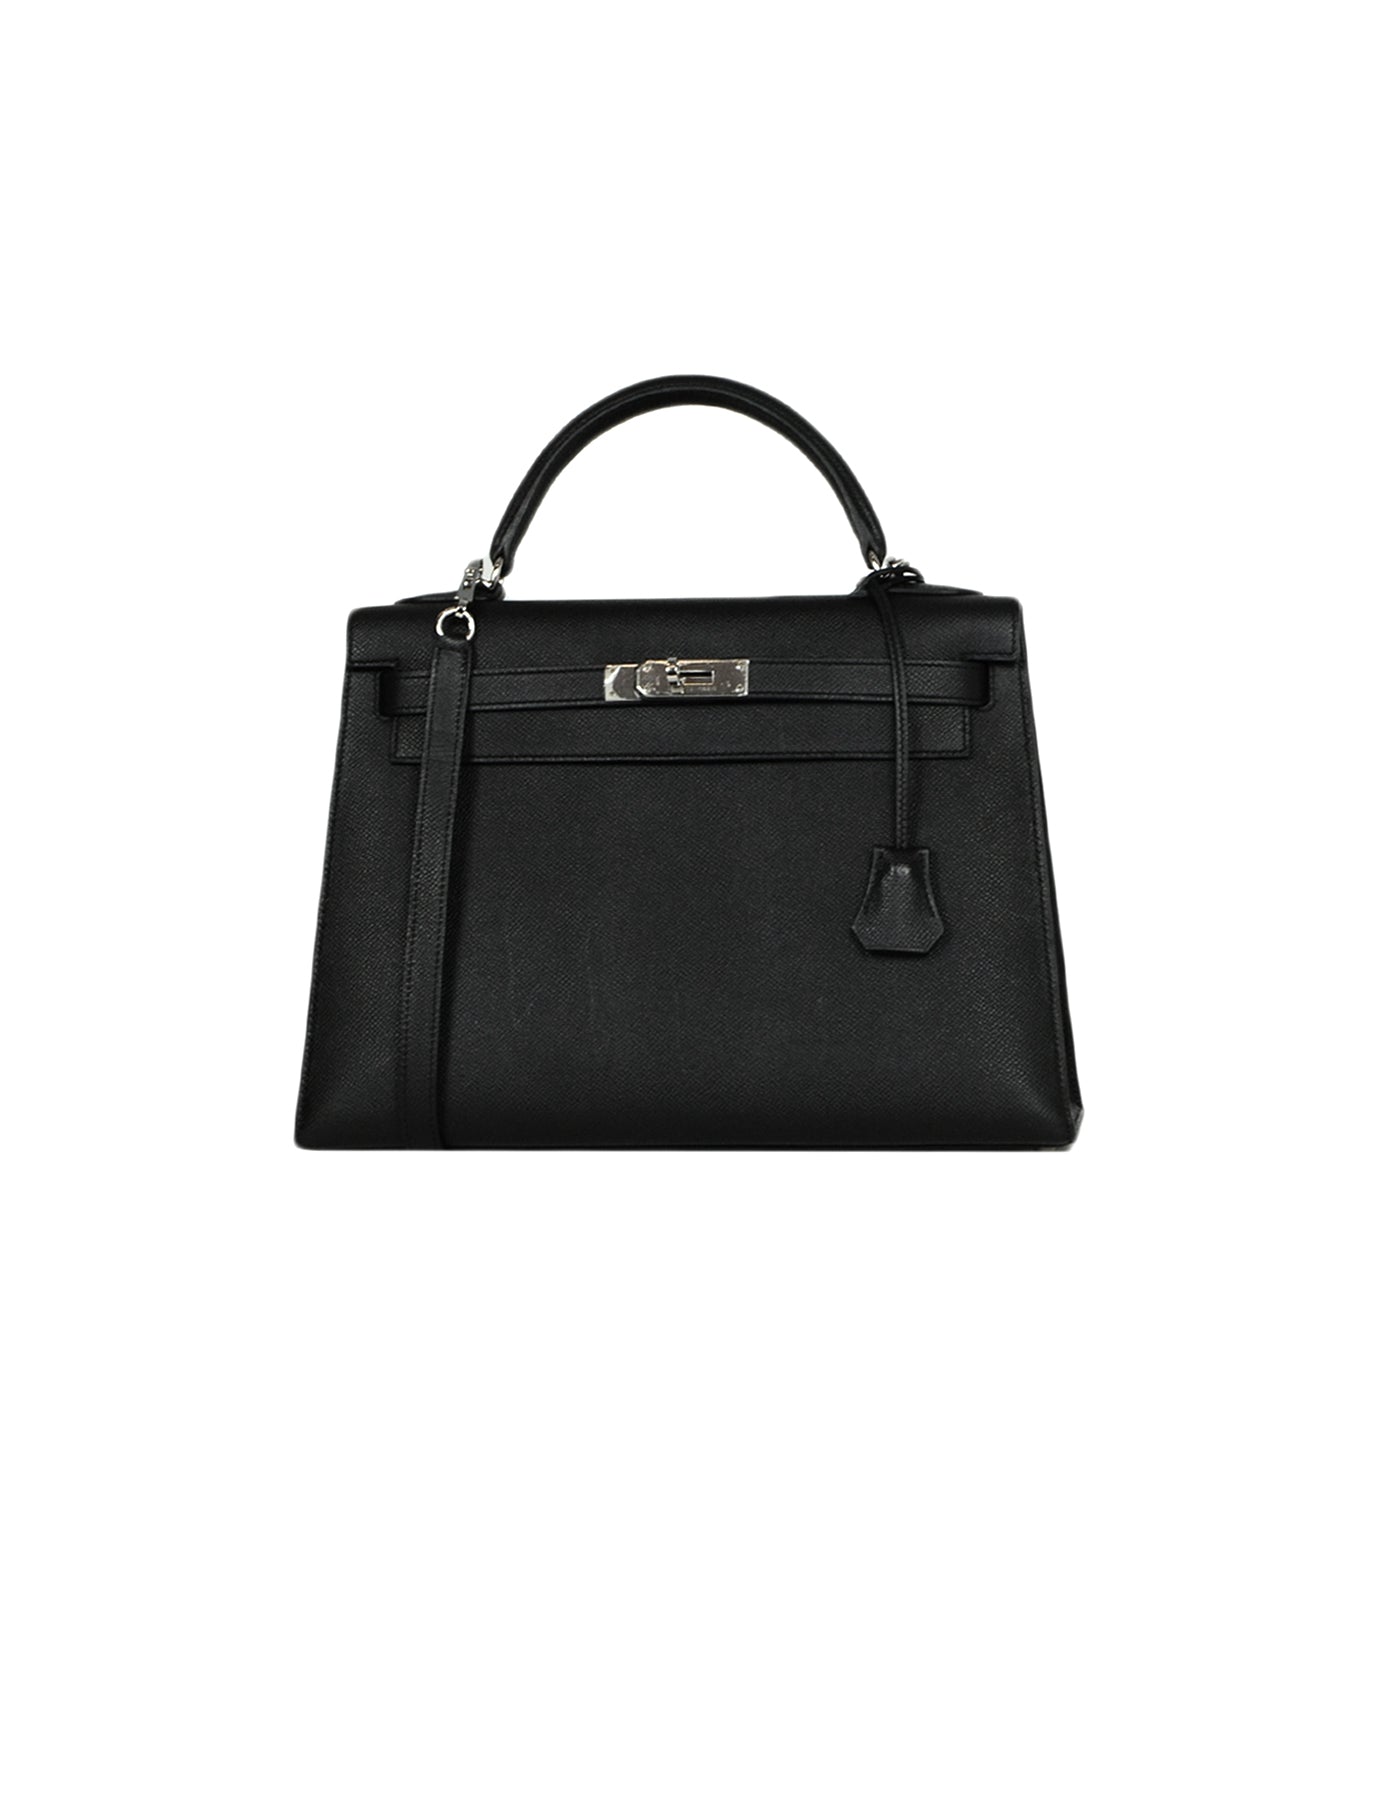 Hermes Black Epsom Leather 32cm Sellier Kelly Bag w/ Strap Lock & Clochette